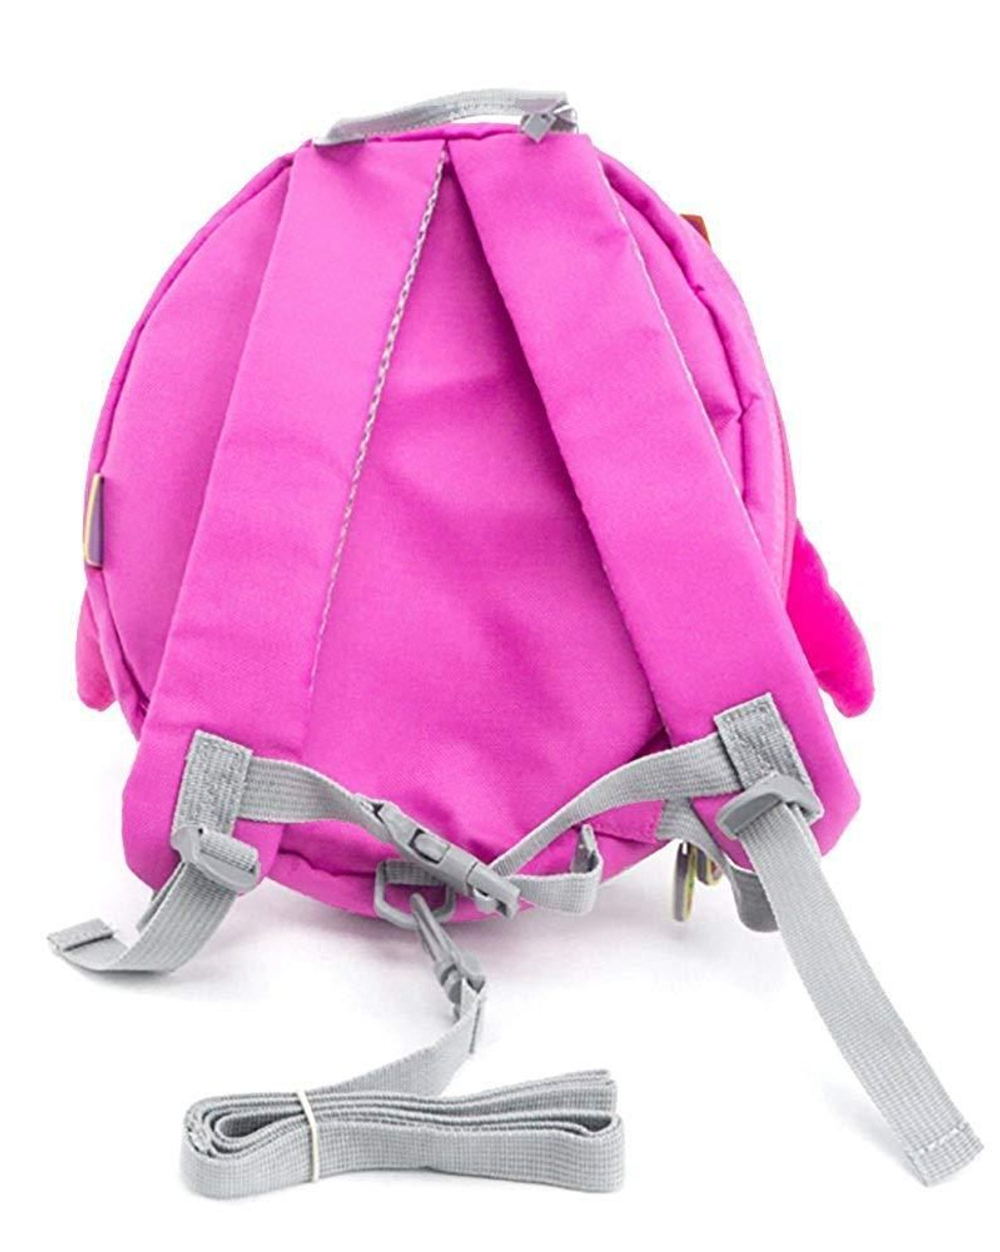 Набор дорожный Bbbag Розовый пингвин рюкзак + чемодан